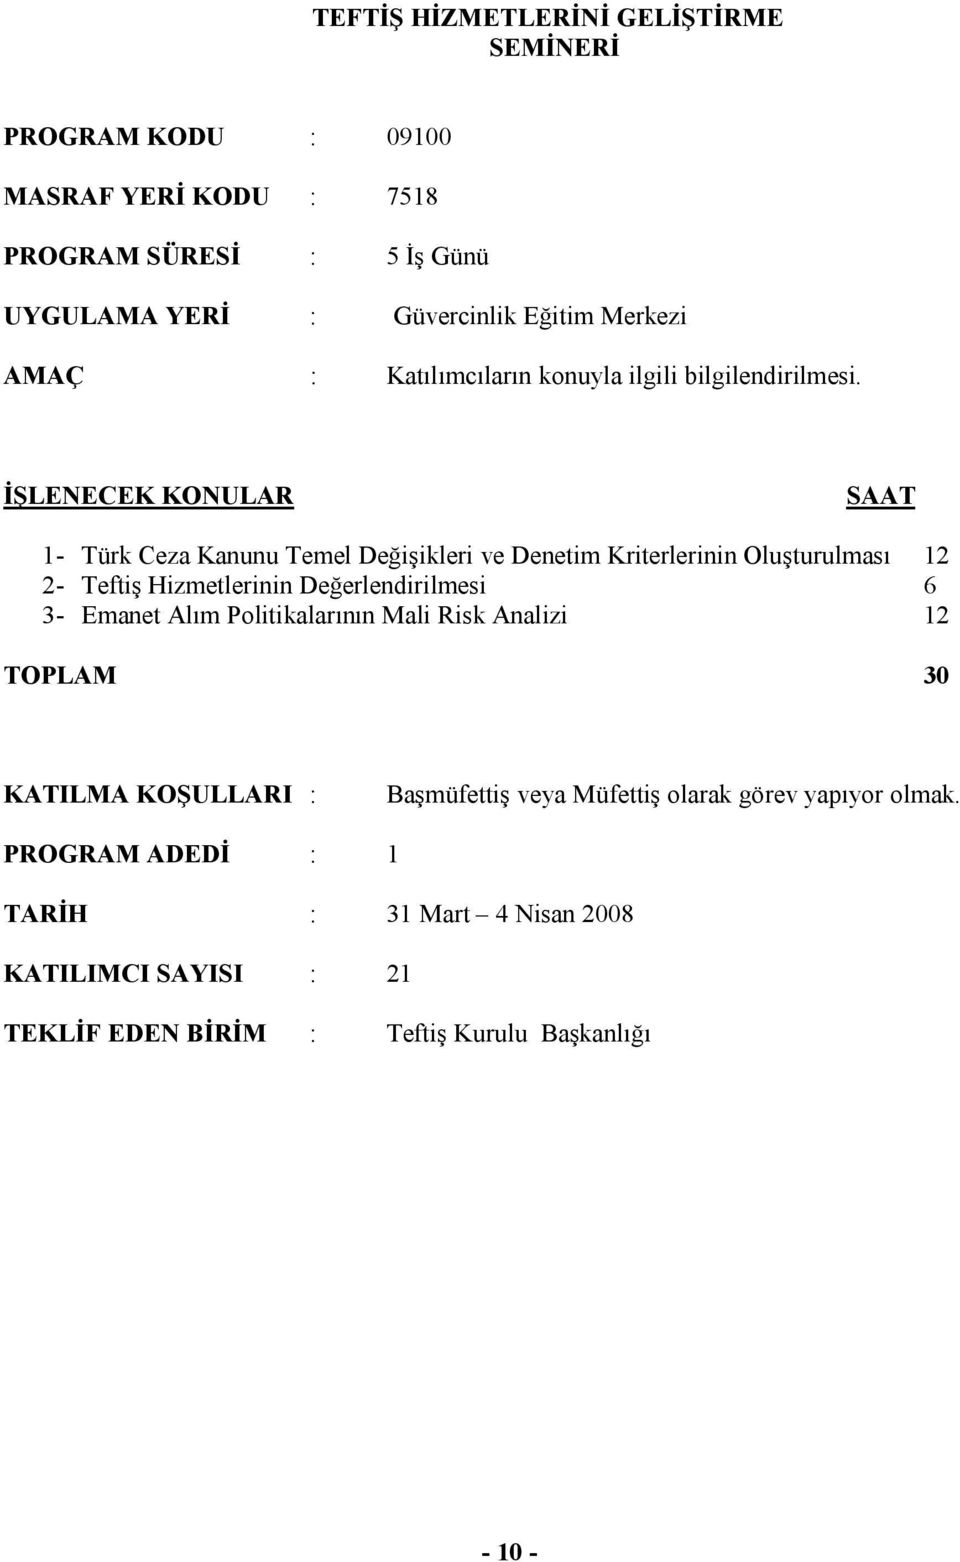 İŞLENECEK KONULAR 1- Türk Ceza Kanunu Temel Değişikleri ve Denetim Kriterlerinin Oluşturulması 12 2- Teftiş Hizmetlerinin Değerlendirilmesi 6 3- Emanet